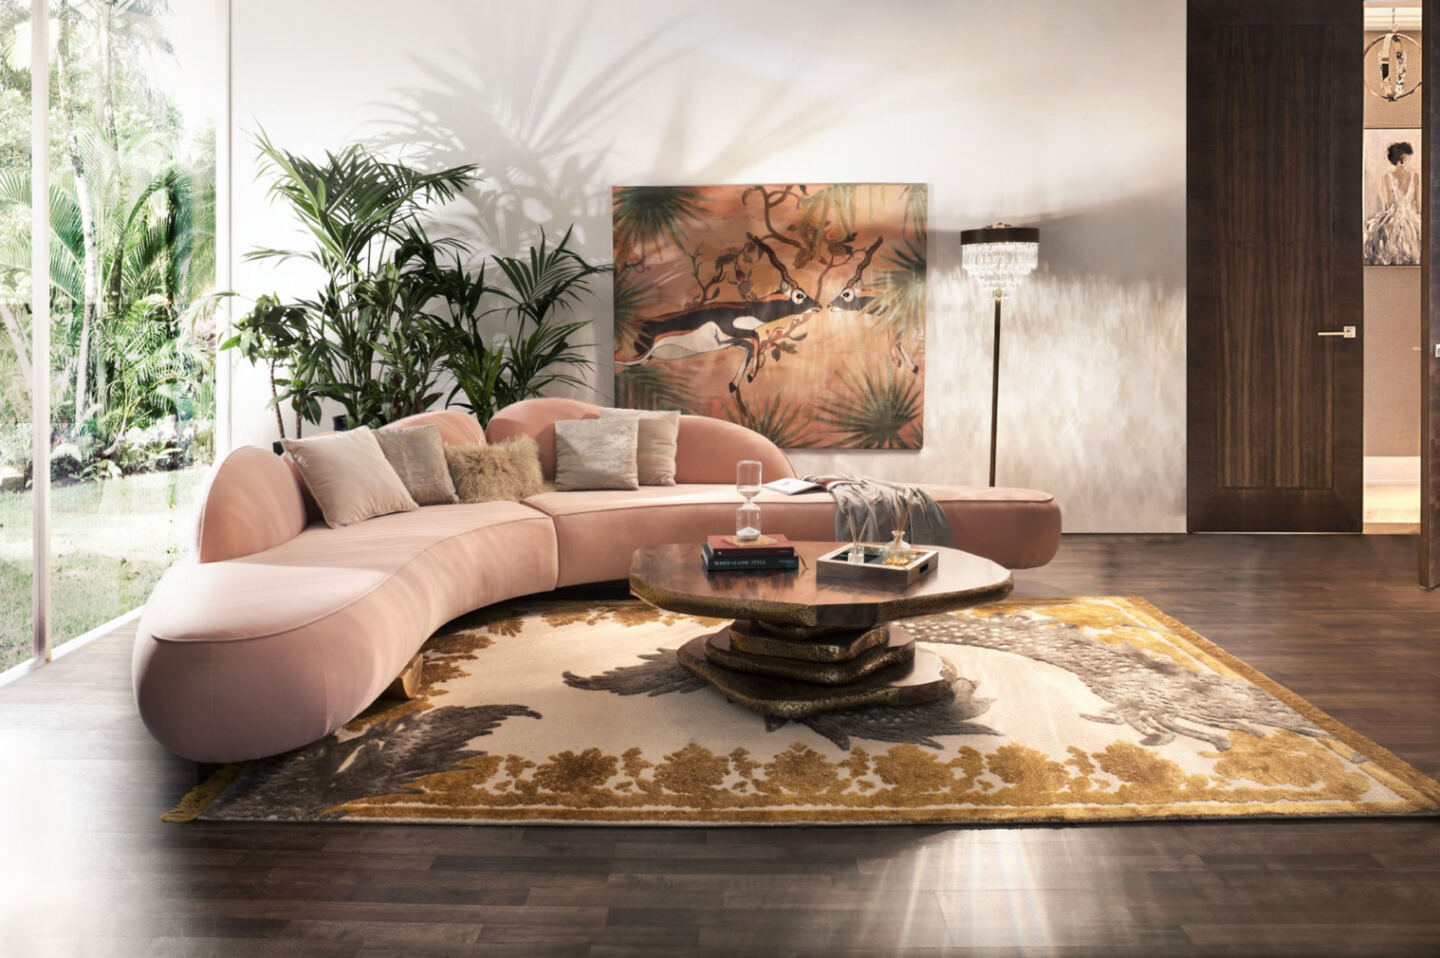 Rosa geschwungenes Sofa in einem minimalistischen Raum mit Pflanzen.